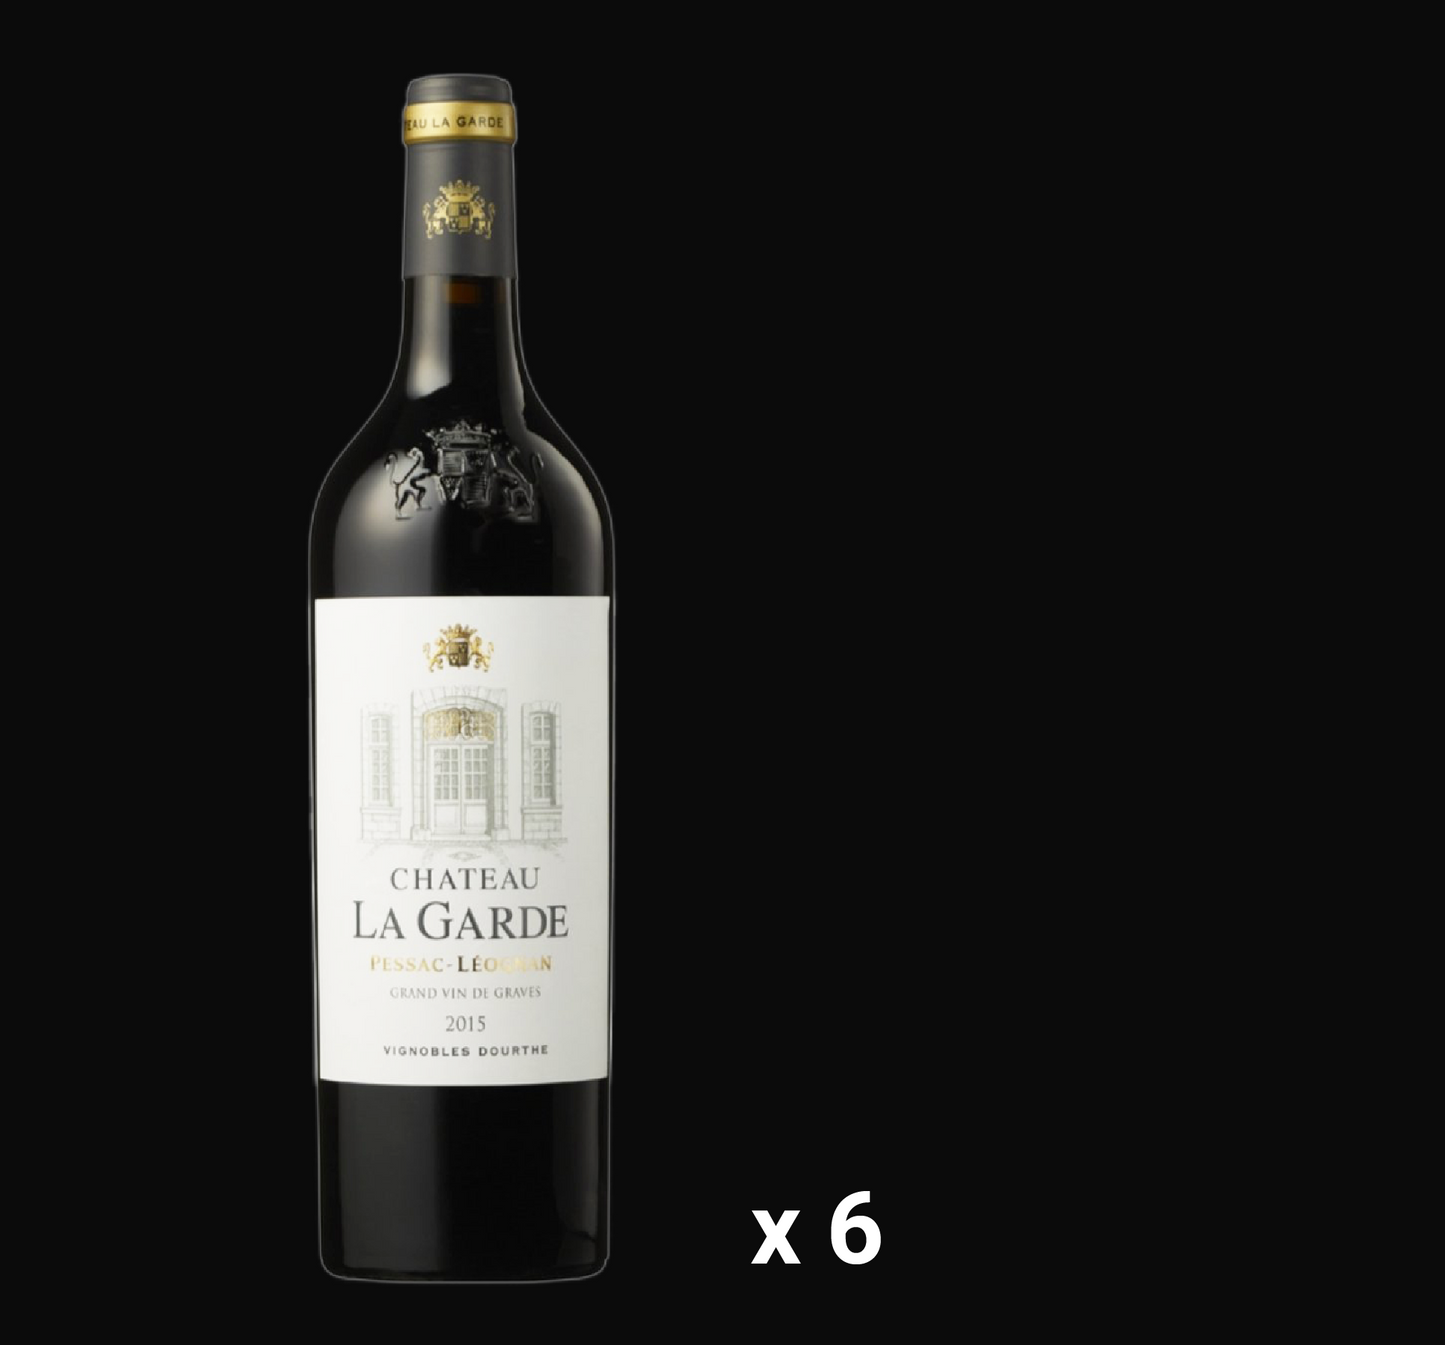 2013 Chateau La Garde Pessac-Leognan Grand Vin De Graves (6 bottles)